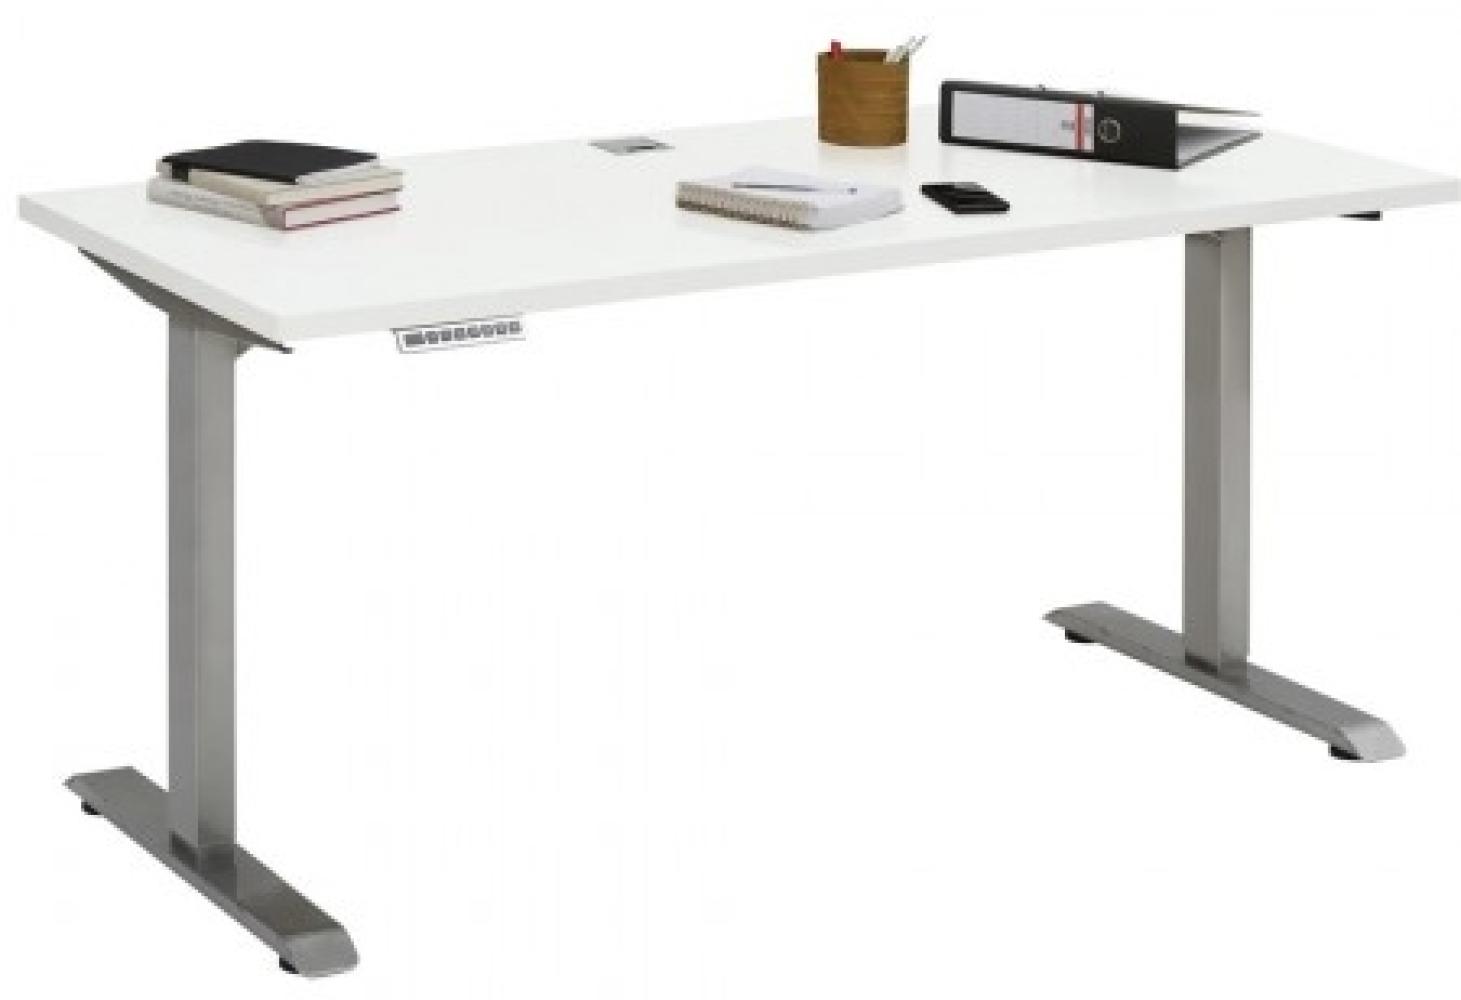 Maja Höhenverstellbarer Schreibtisch 5507 Roheisen natur lackiert - weiß matt Bild 1